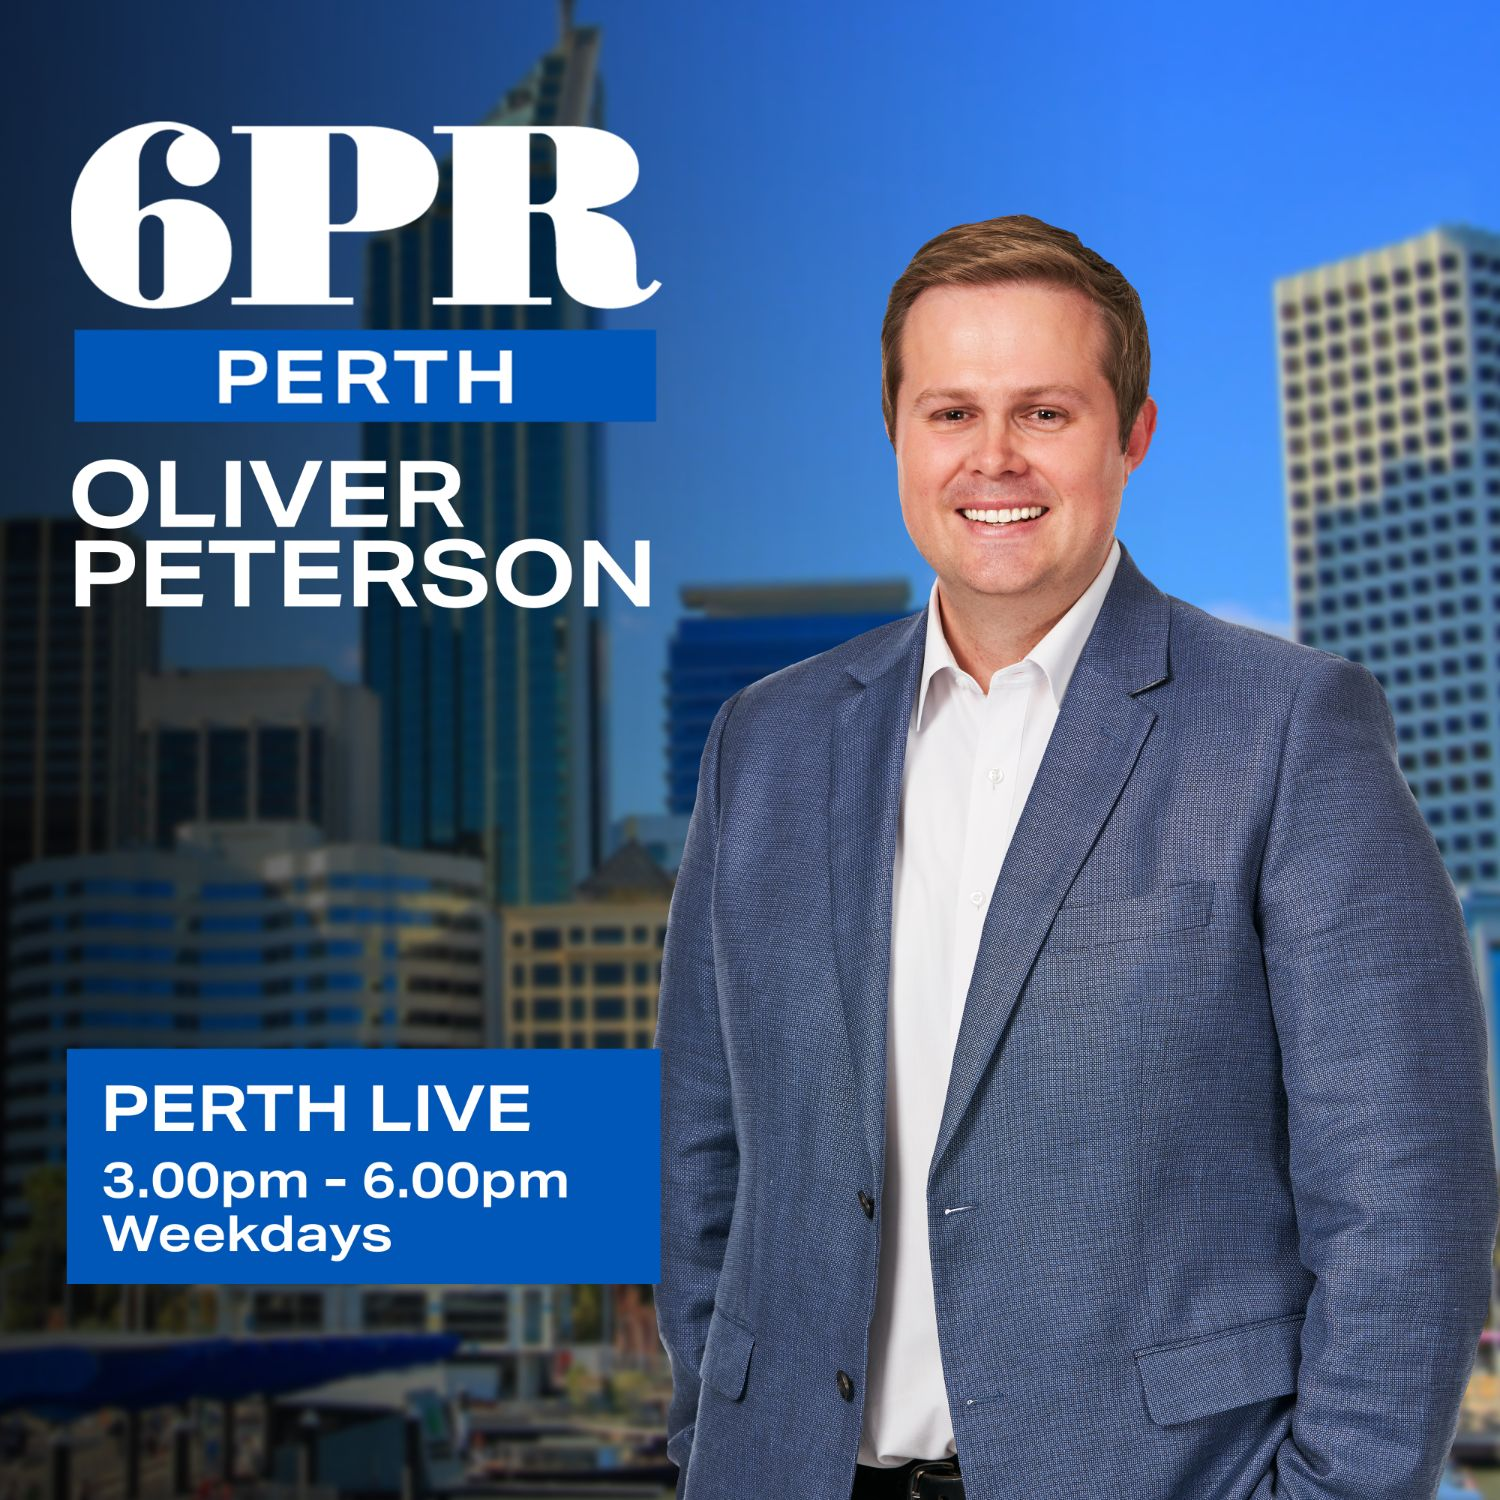 Perth parking inspectors may be cut